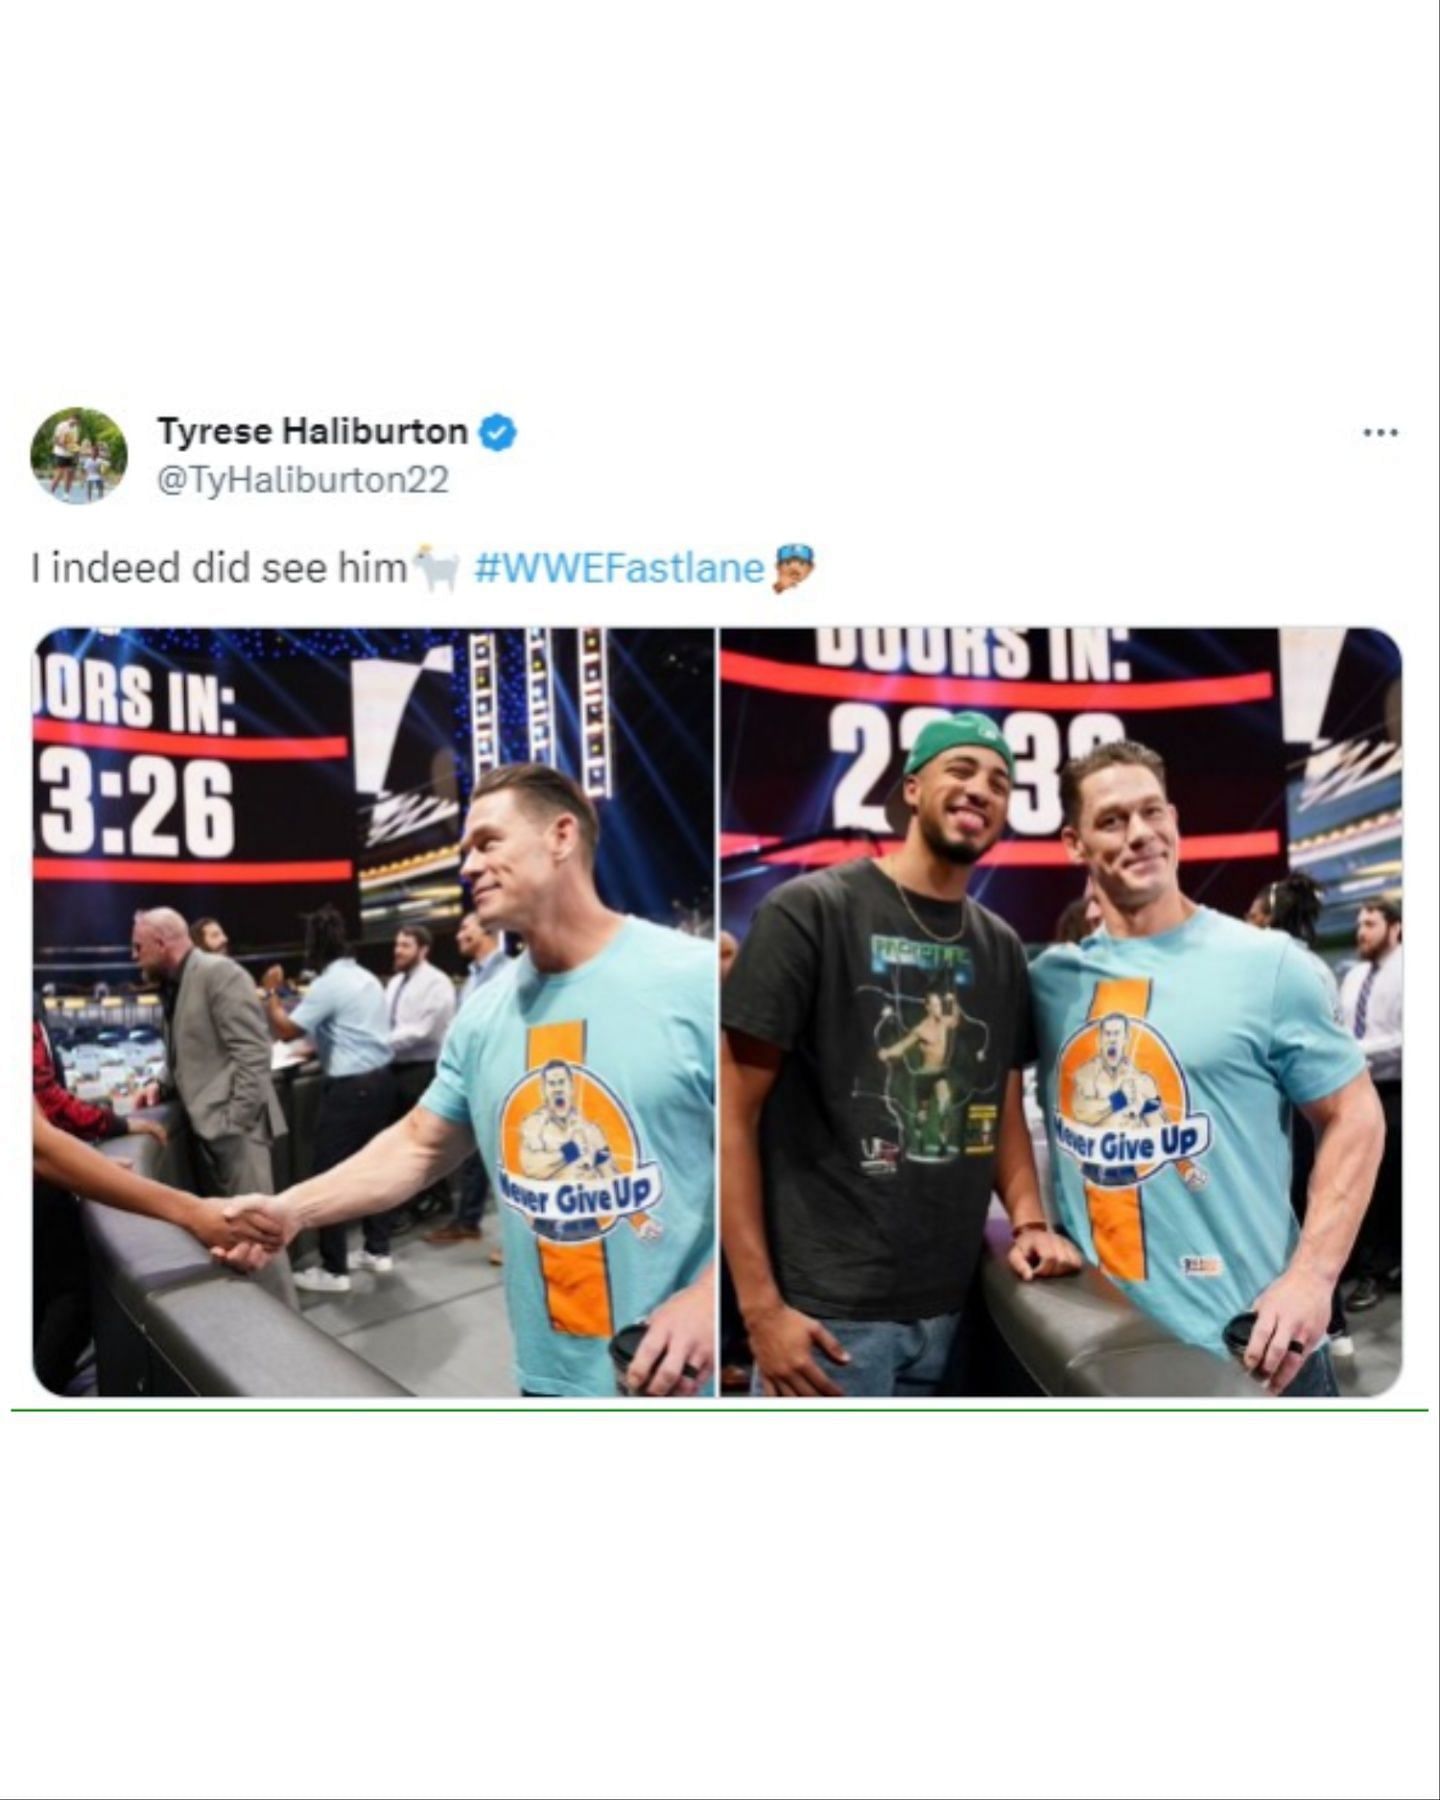 Haliburton meets Cena on WWE Fastlane